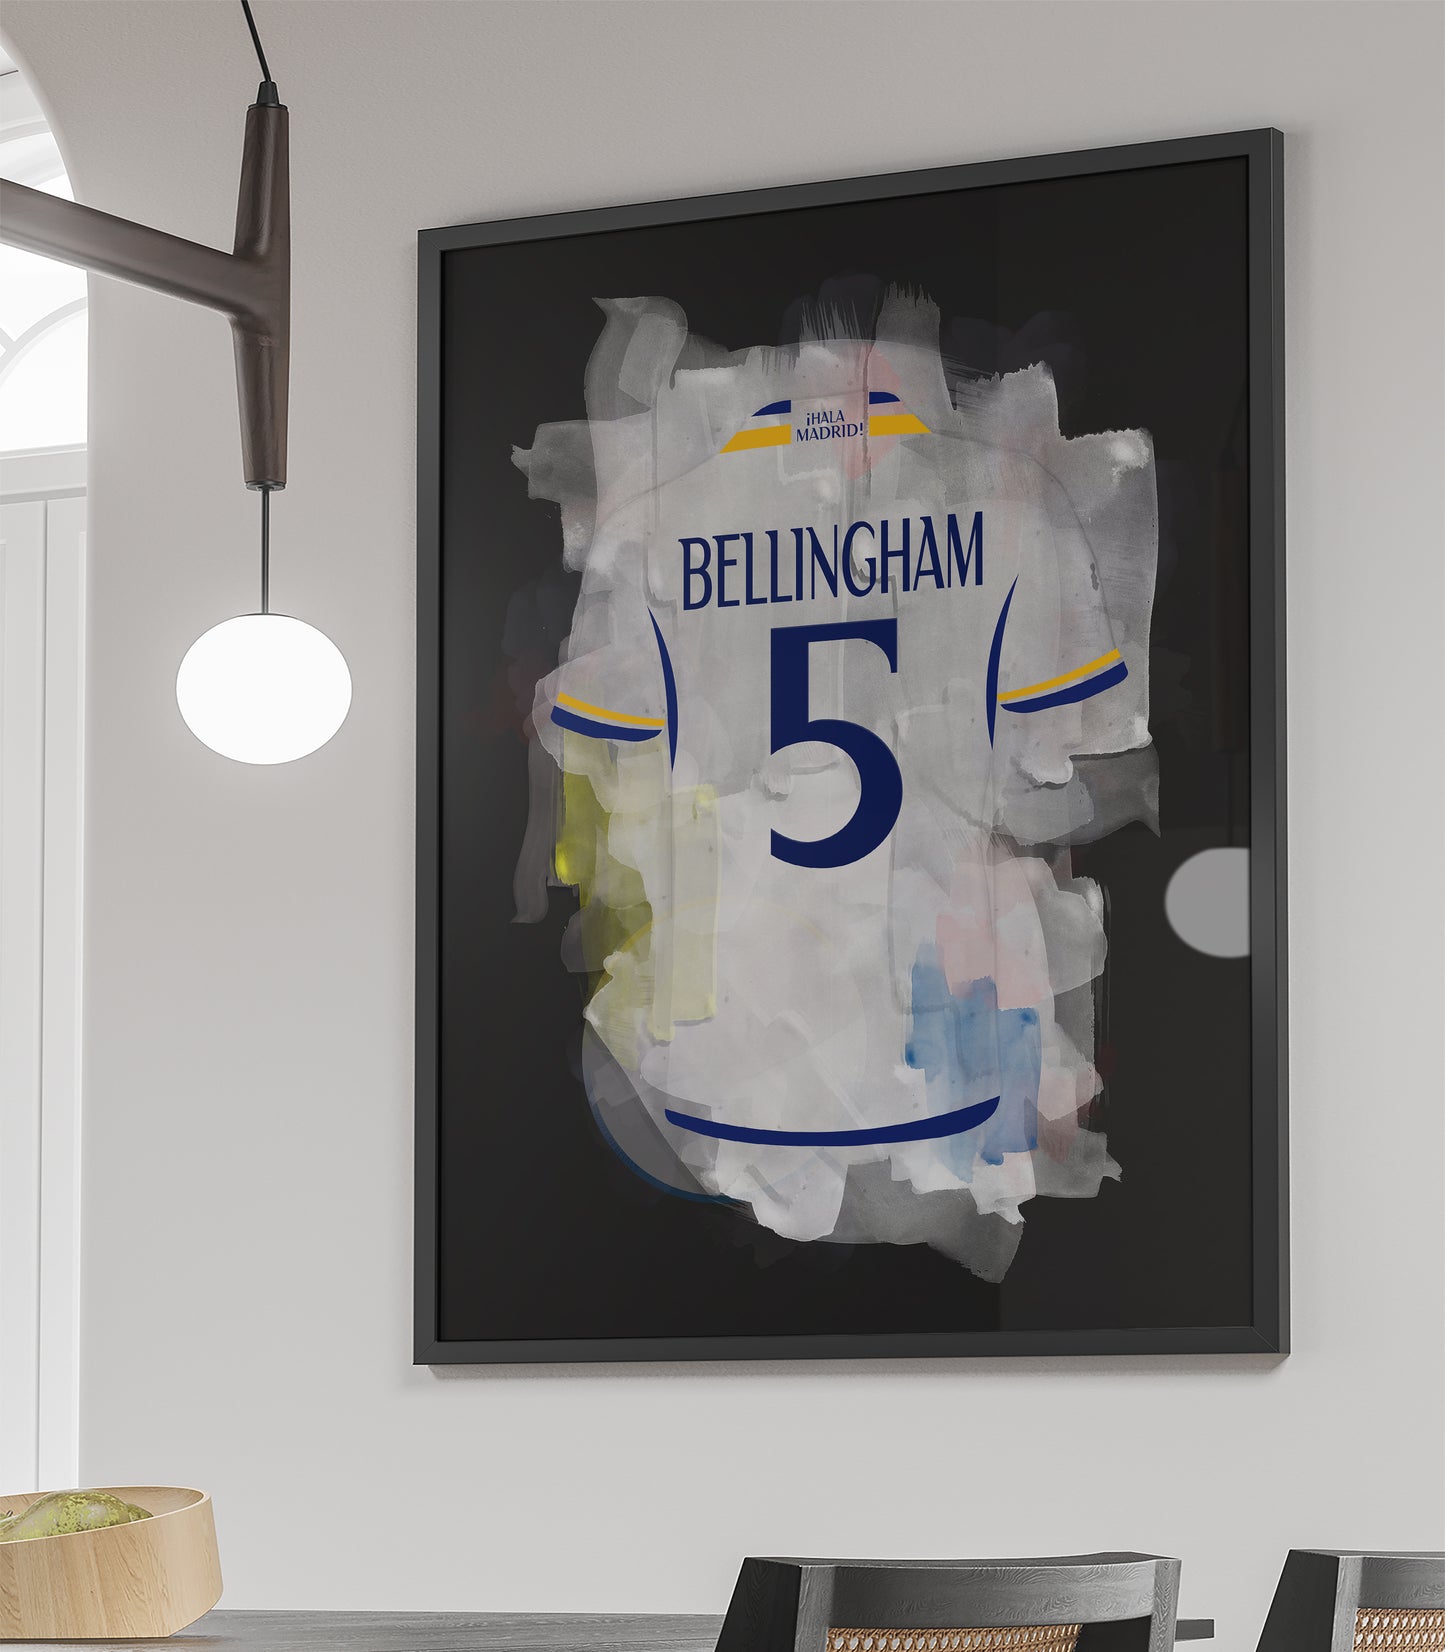 Bellingham voetbalposter Real Madrid